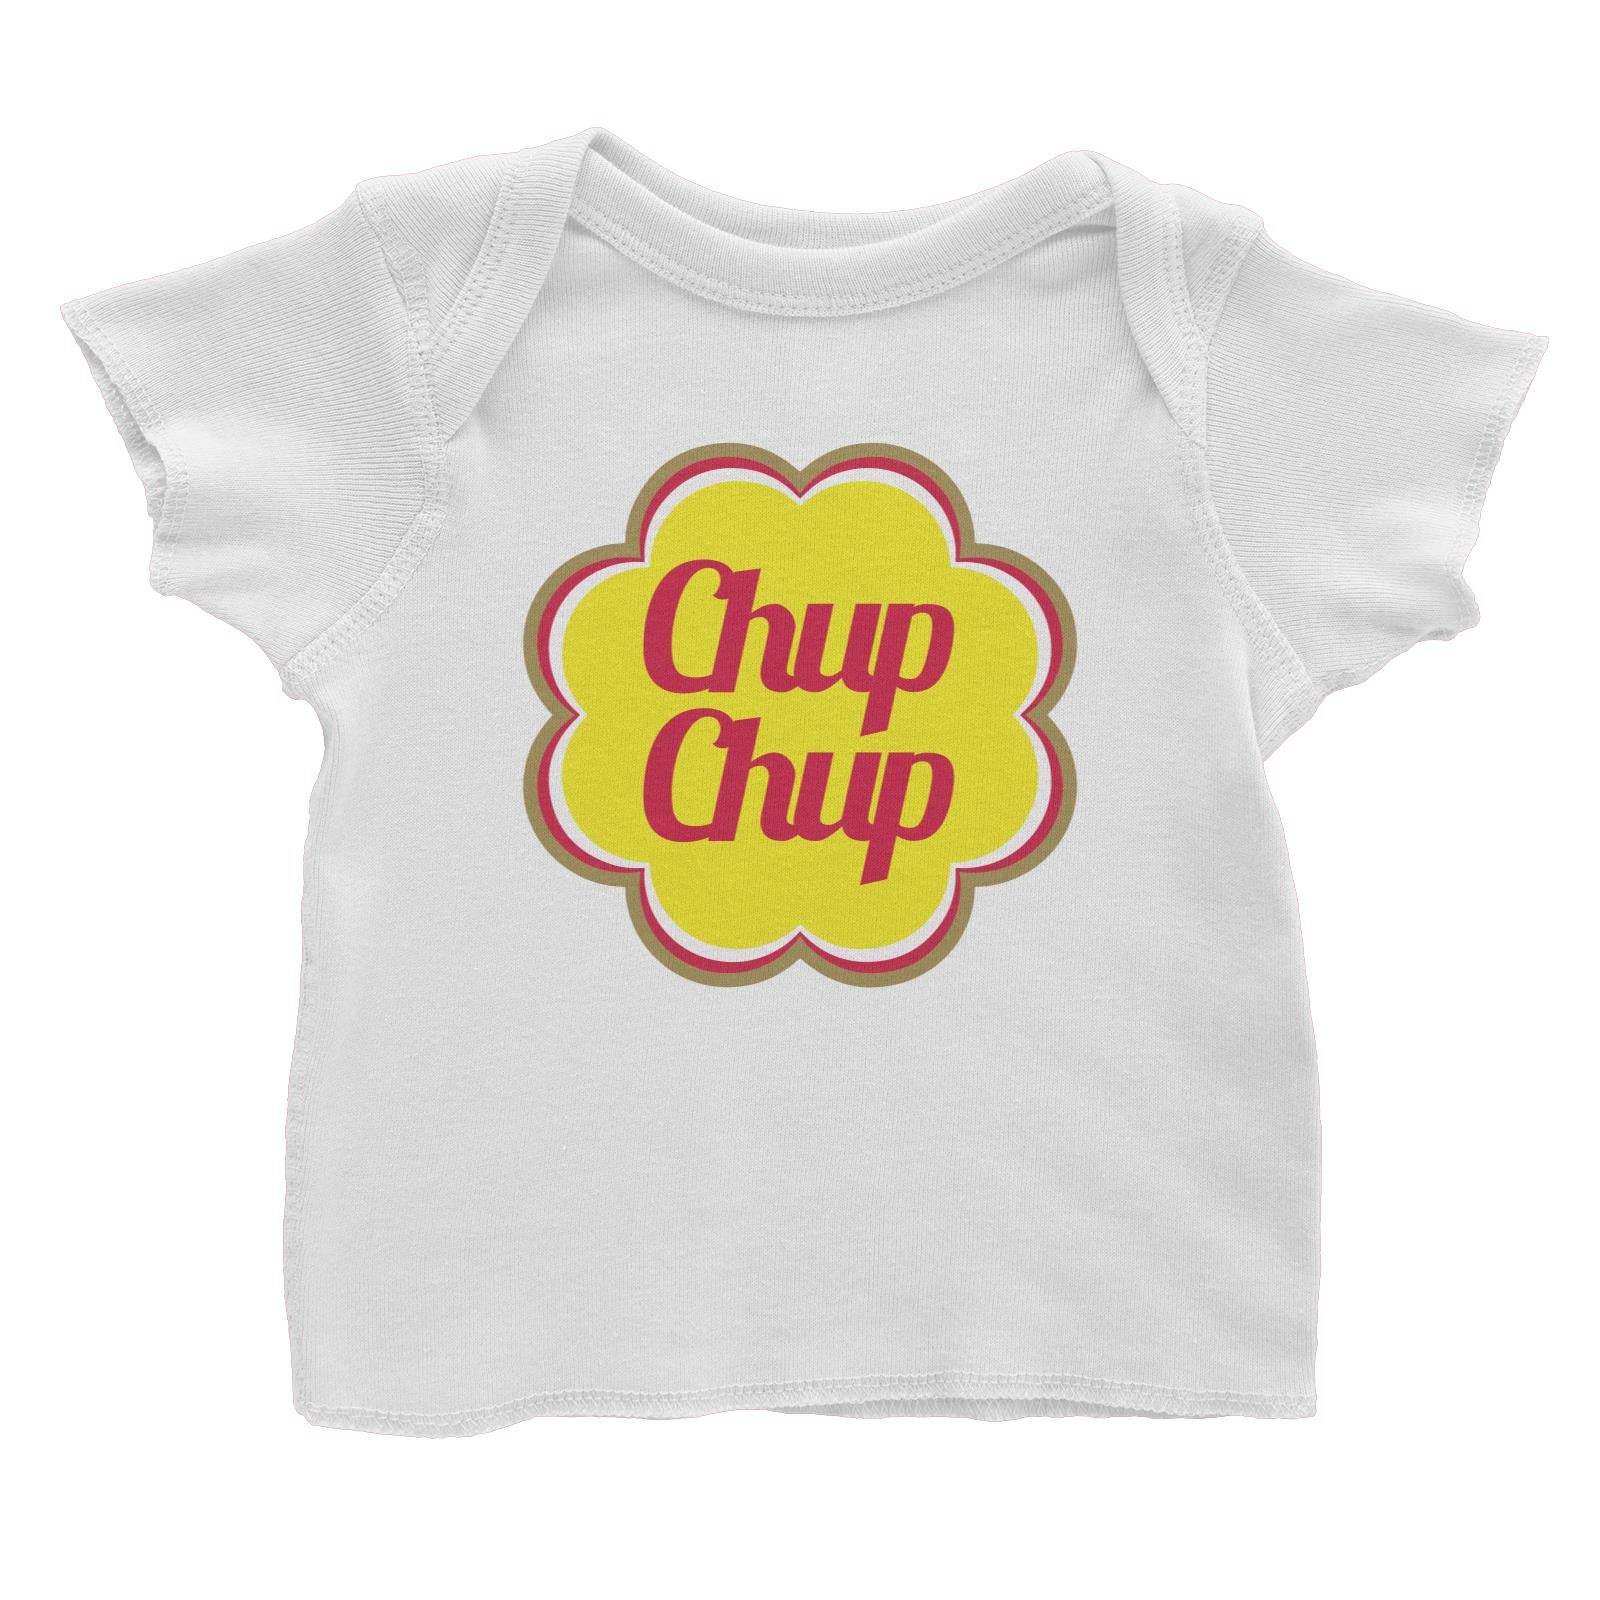 Slang Statement Chup Chup Baby T-Shirt